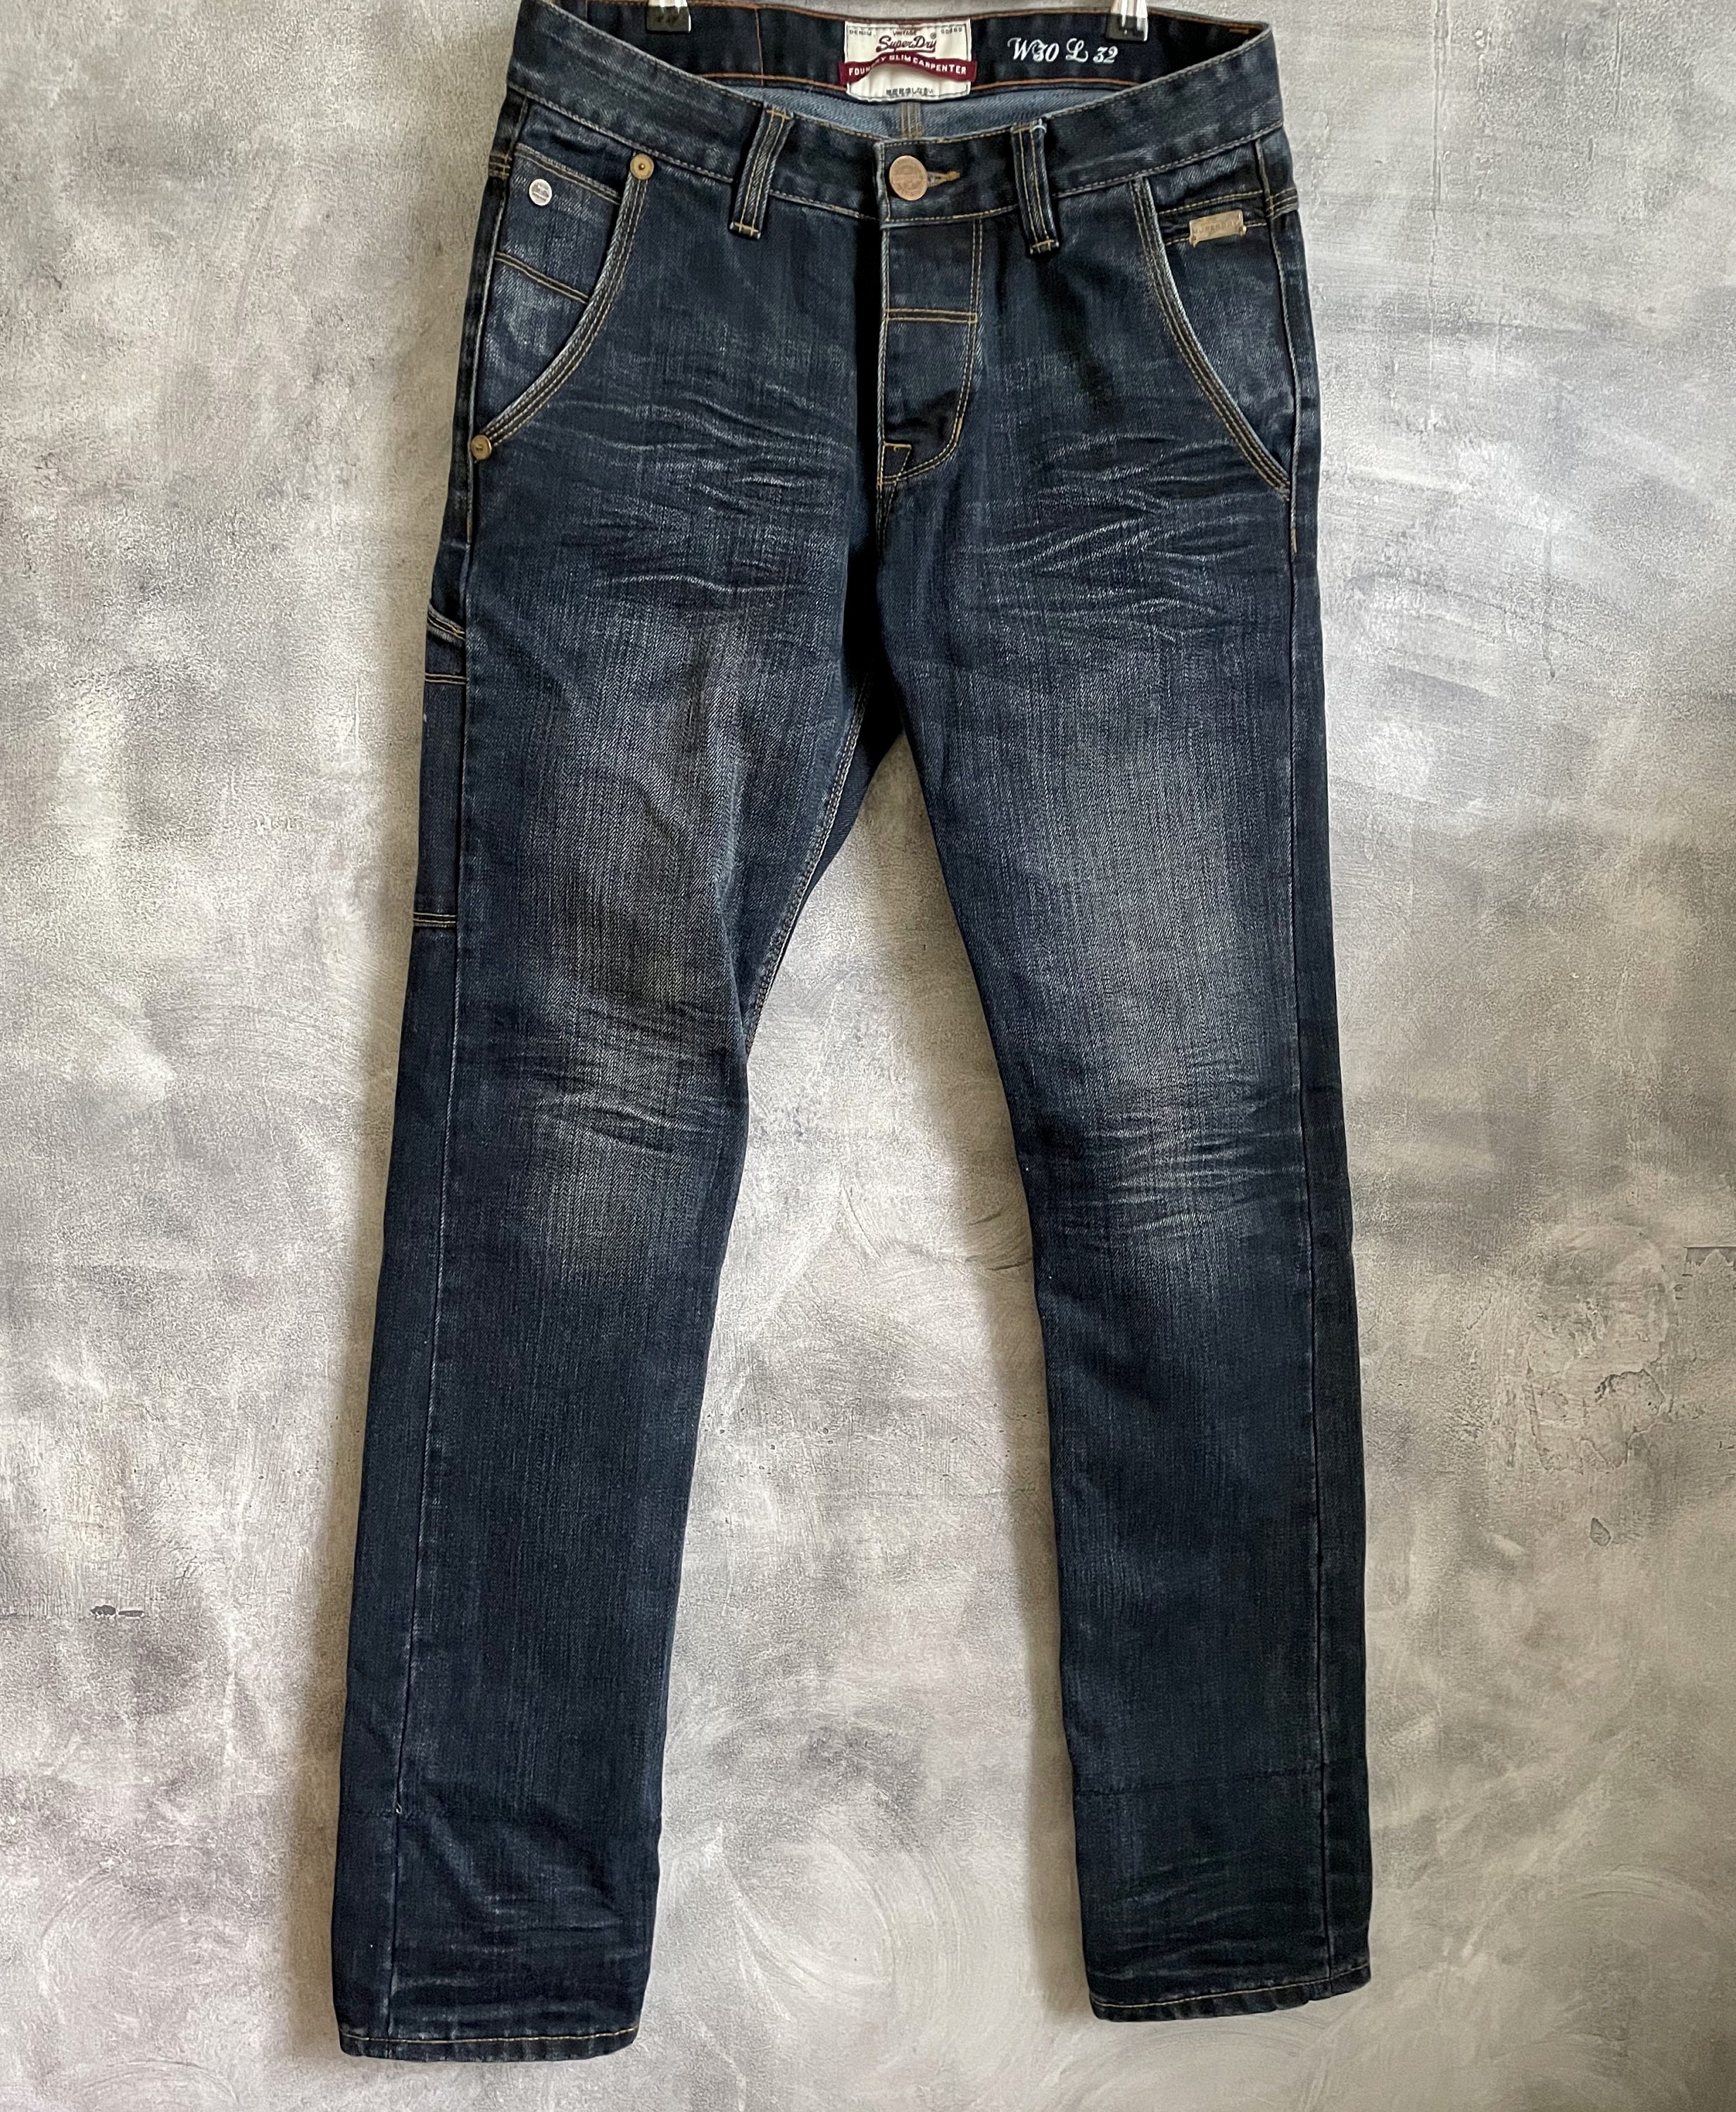 Superdry Cotton Mid Rise Denim Carpenter Jeans - Blue